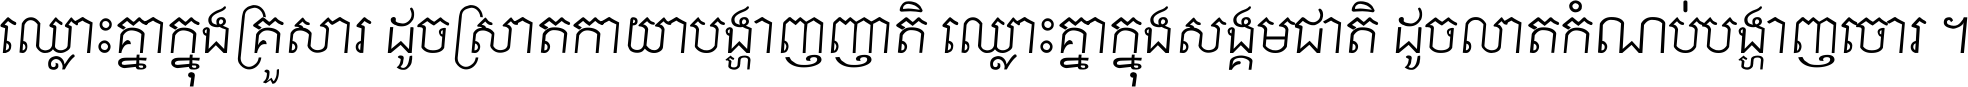 Khmer Chhay Text 8